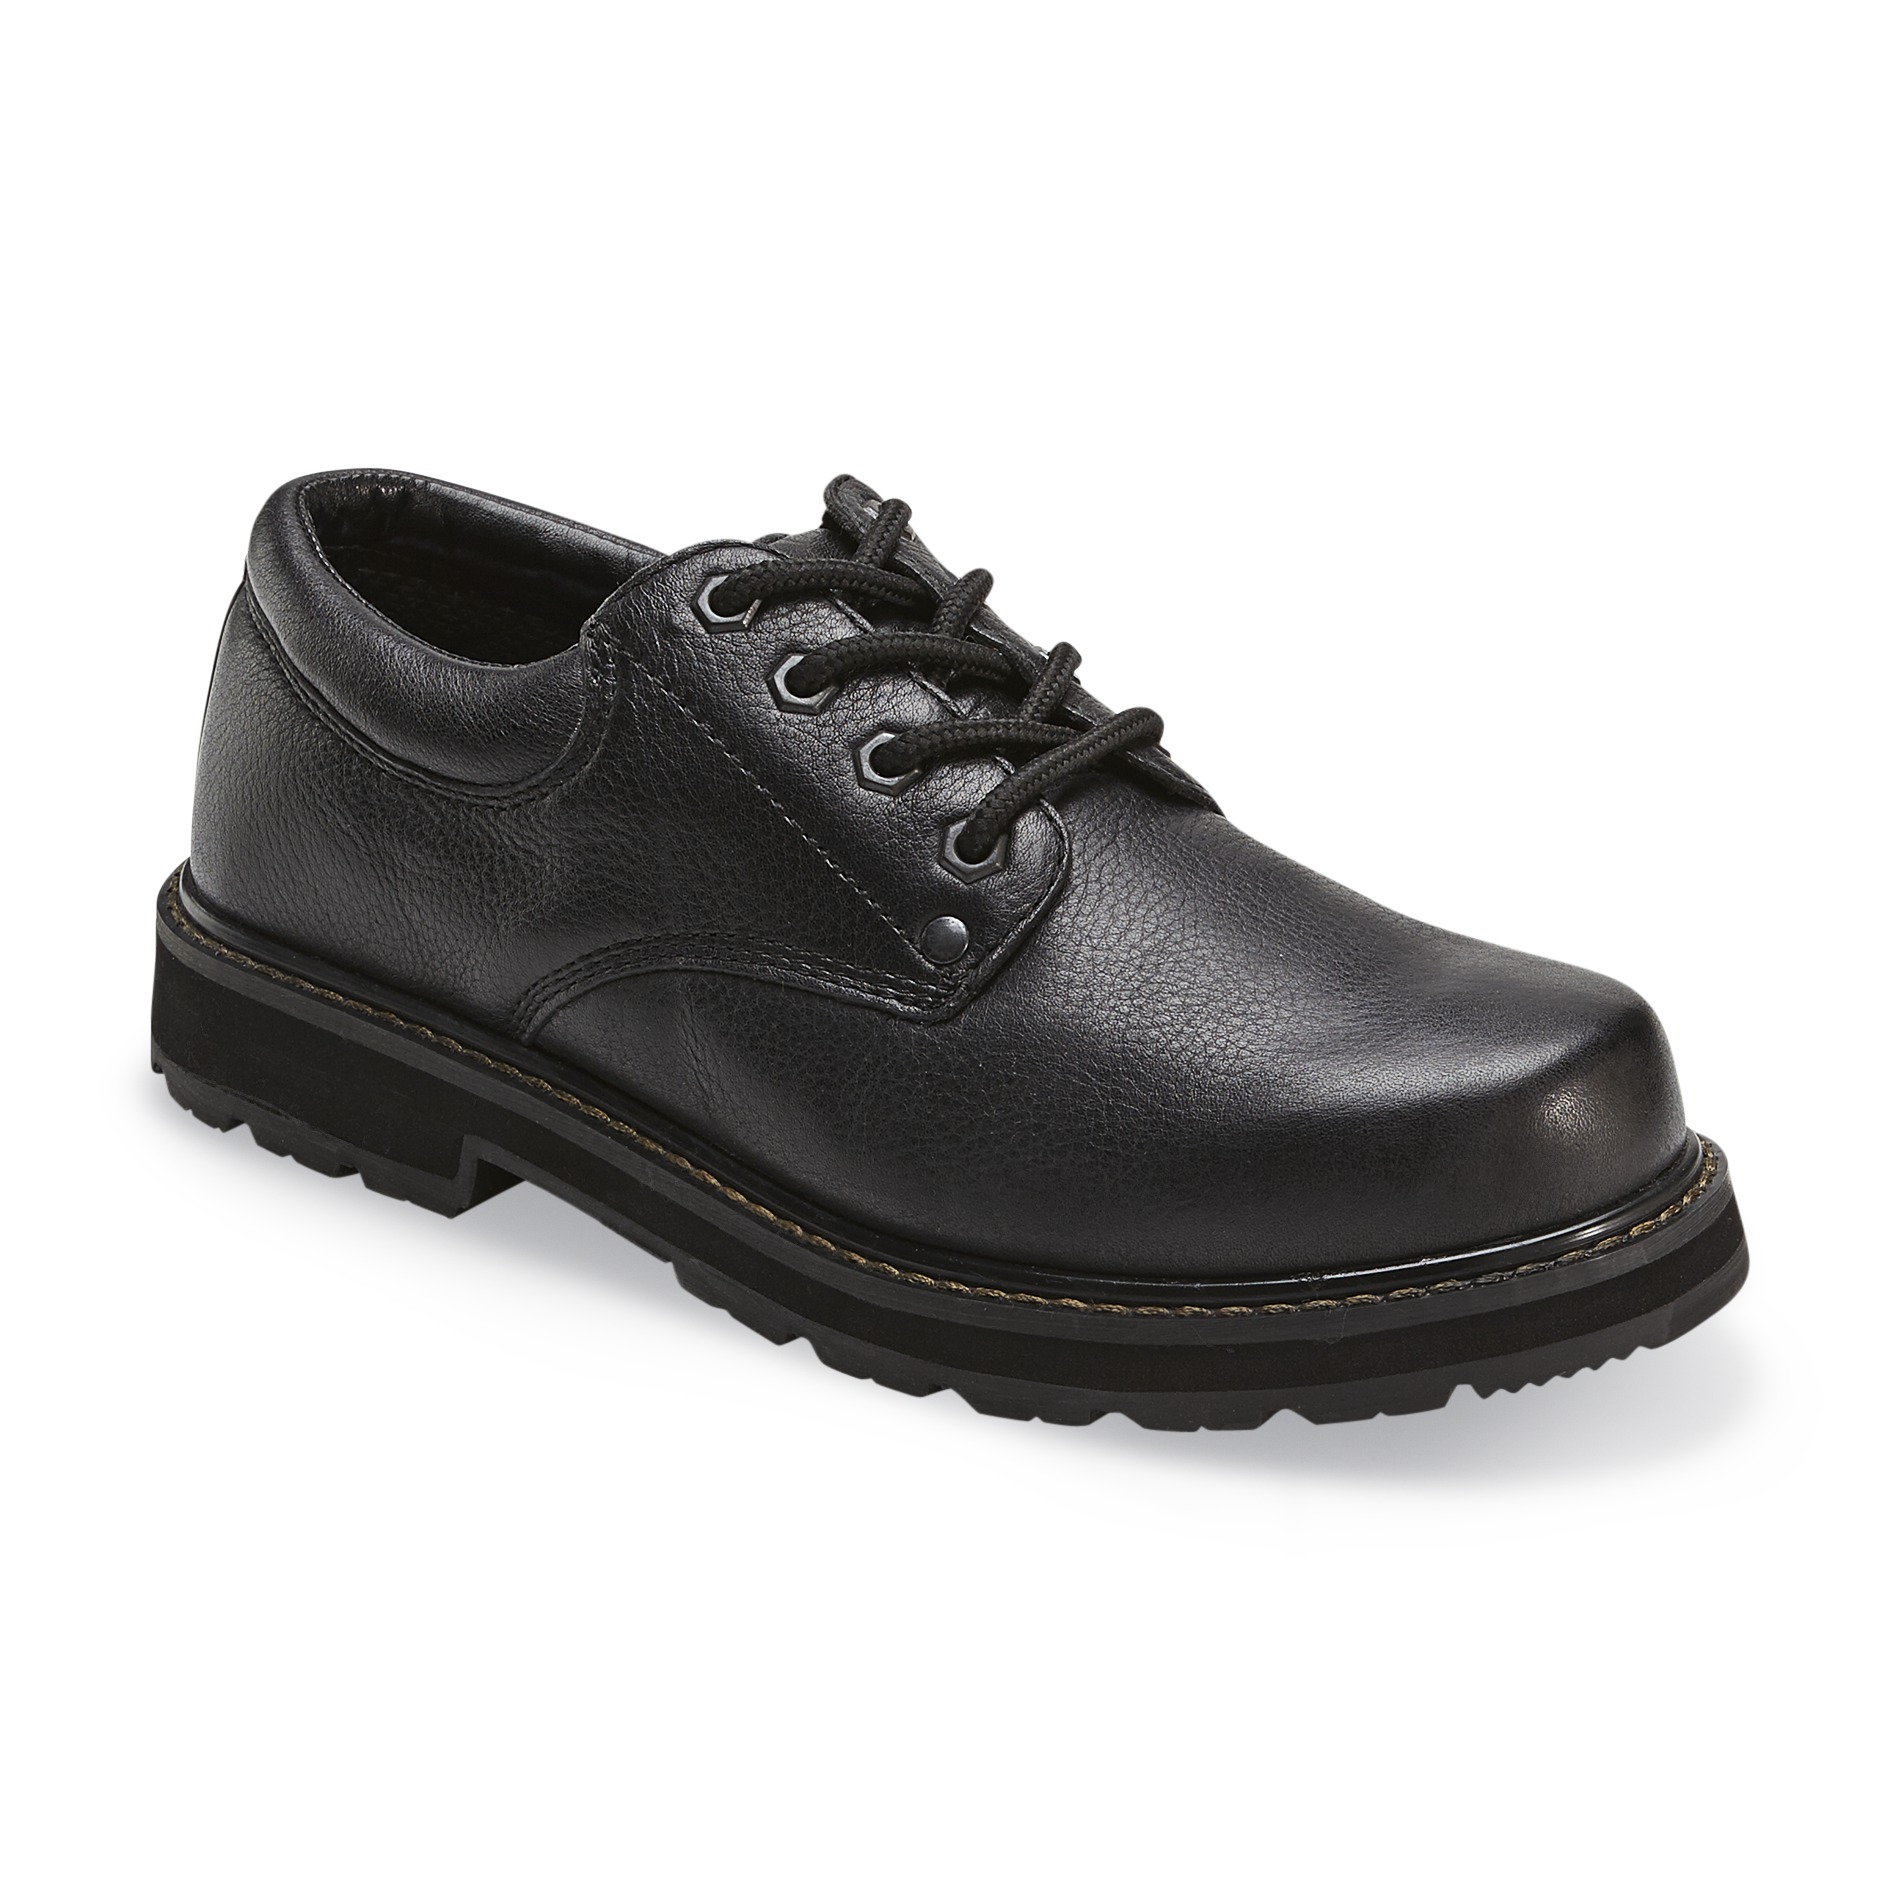 work shoes dr. schollu0027s menu0027s harrington slip resistant work shoe wide width available  - black HKZUPTR